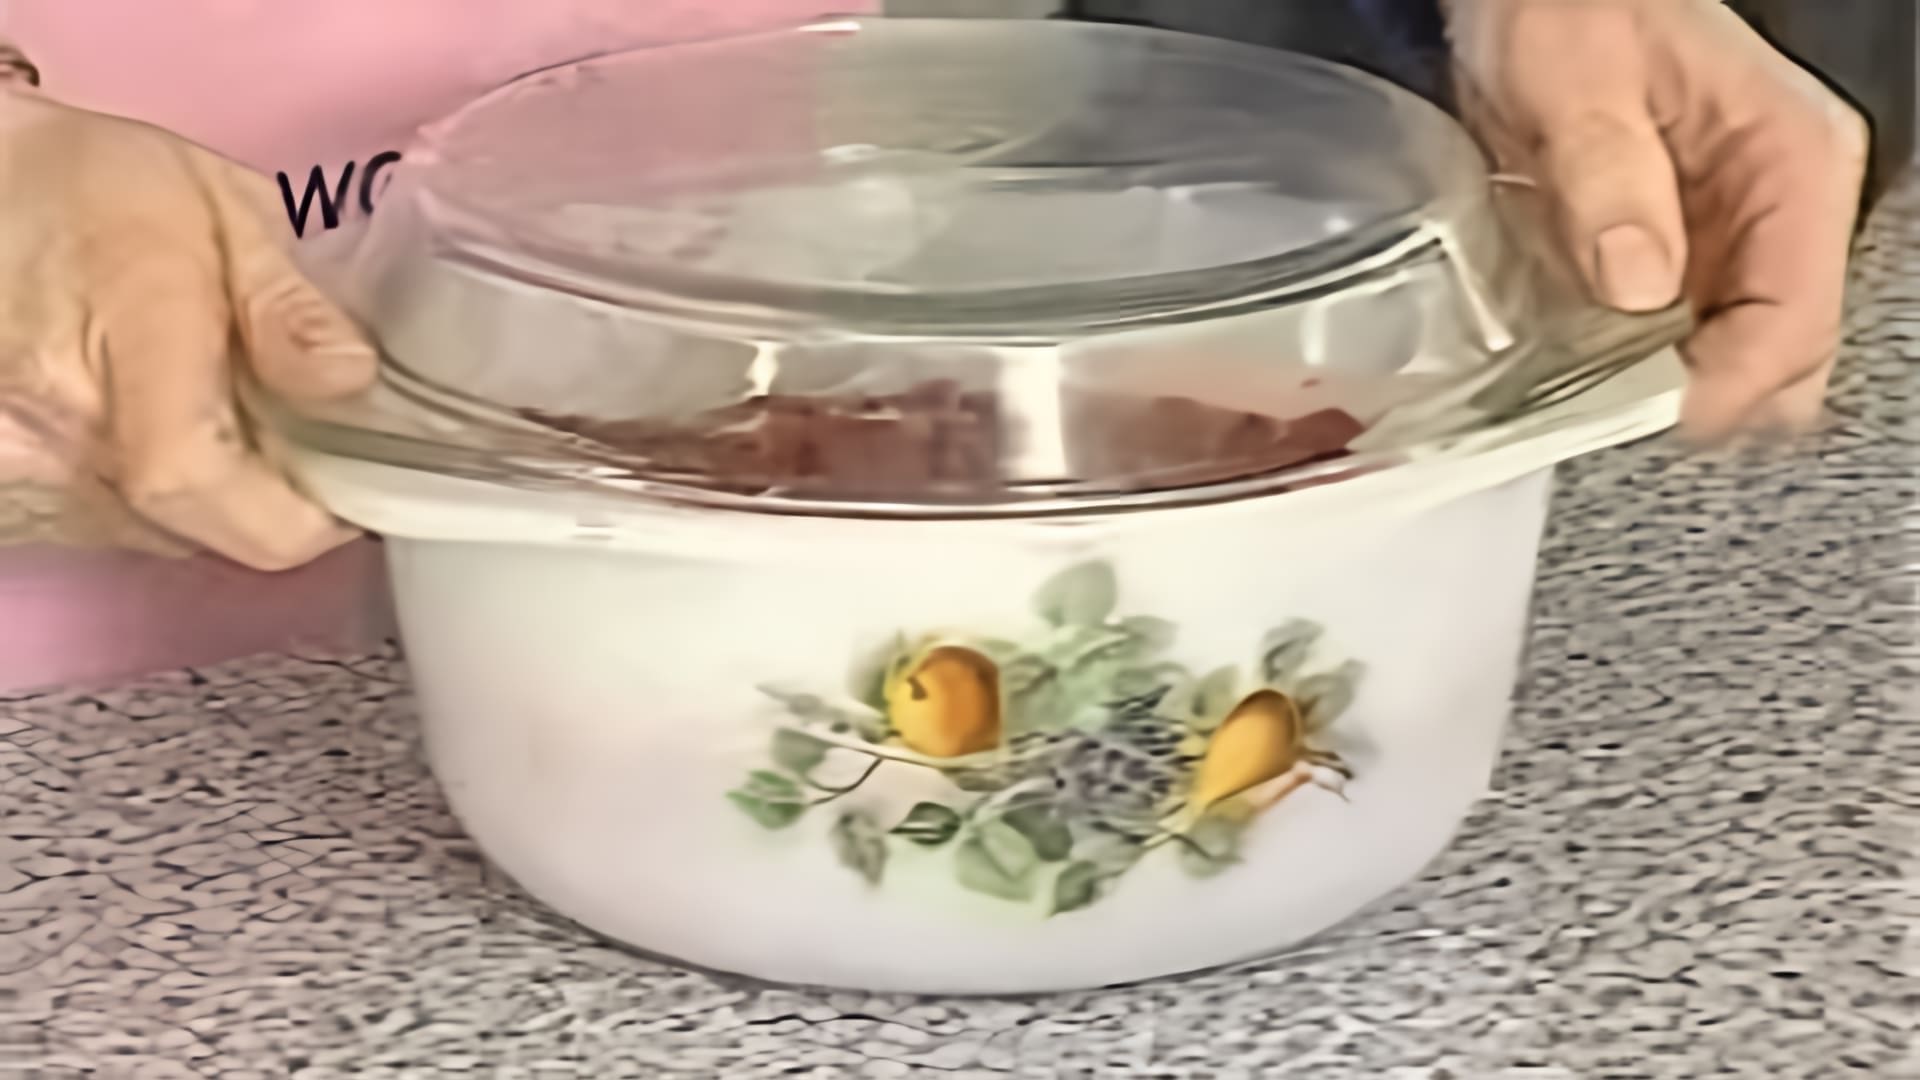 В этом видео демонстрируется процесс приготовления варенья из замороженной клубники